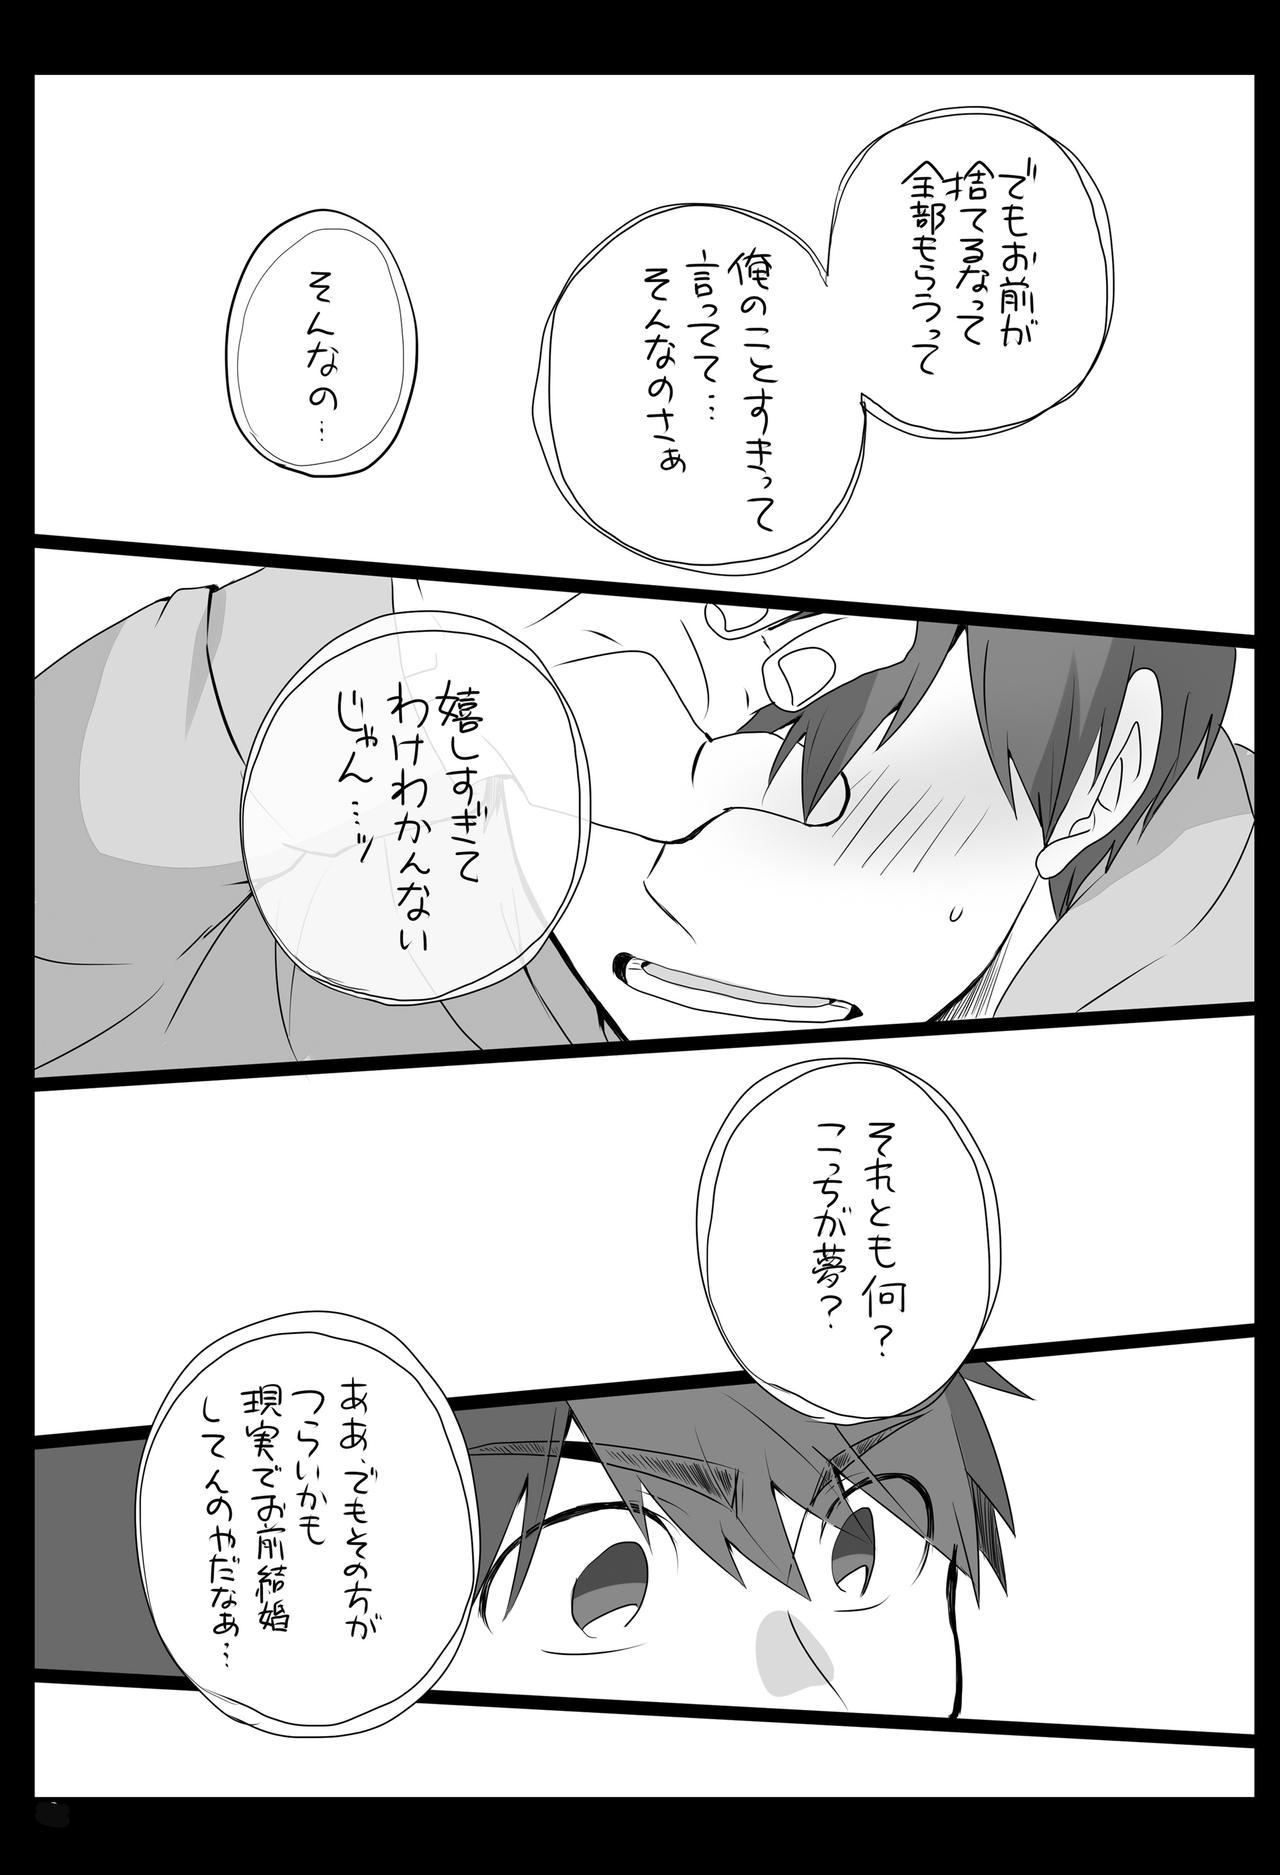 Blows Medetashi Medetashi, to wa Ikanai Youde. - Osomatsu-san Anal Gape - Page 11